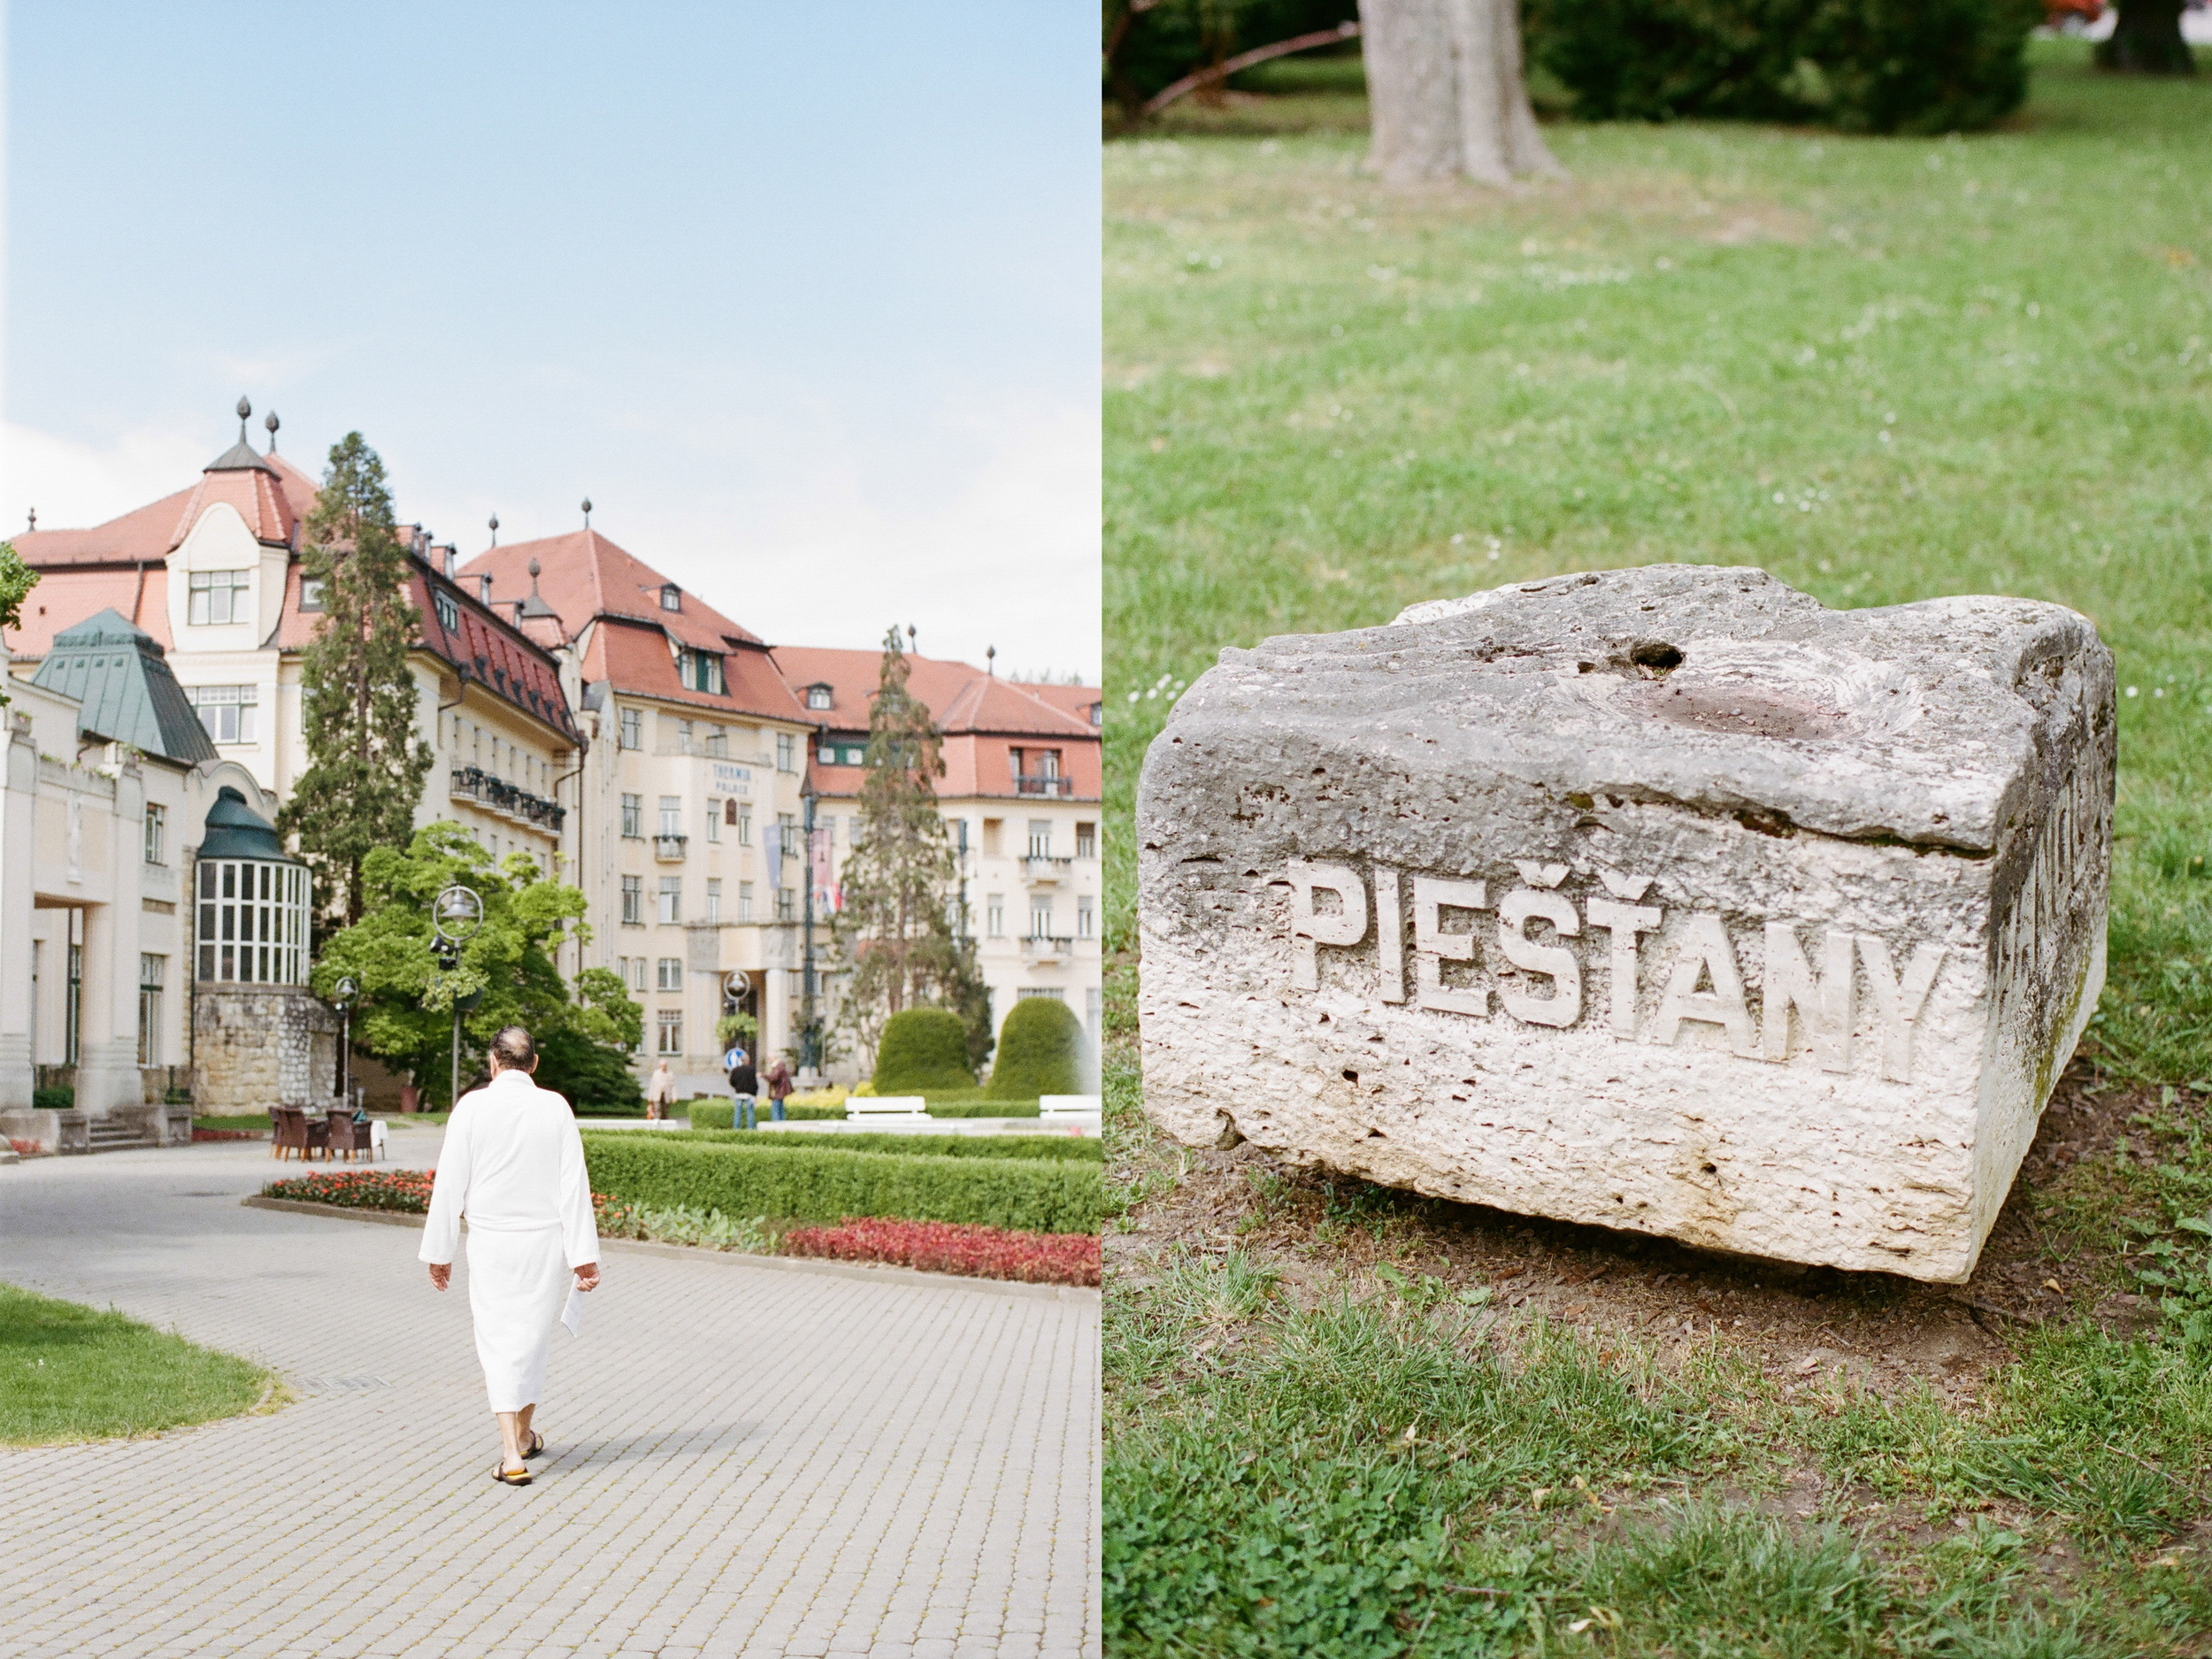 Michelle Cross in Piestany Slovakia - 2.jpg